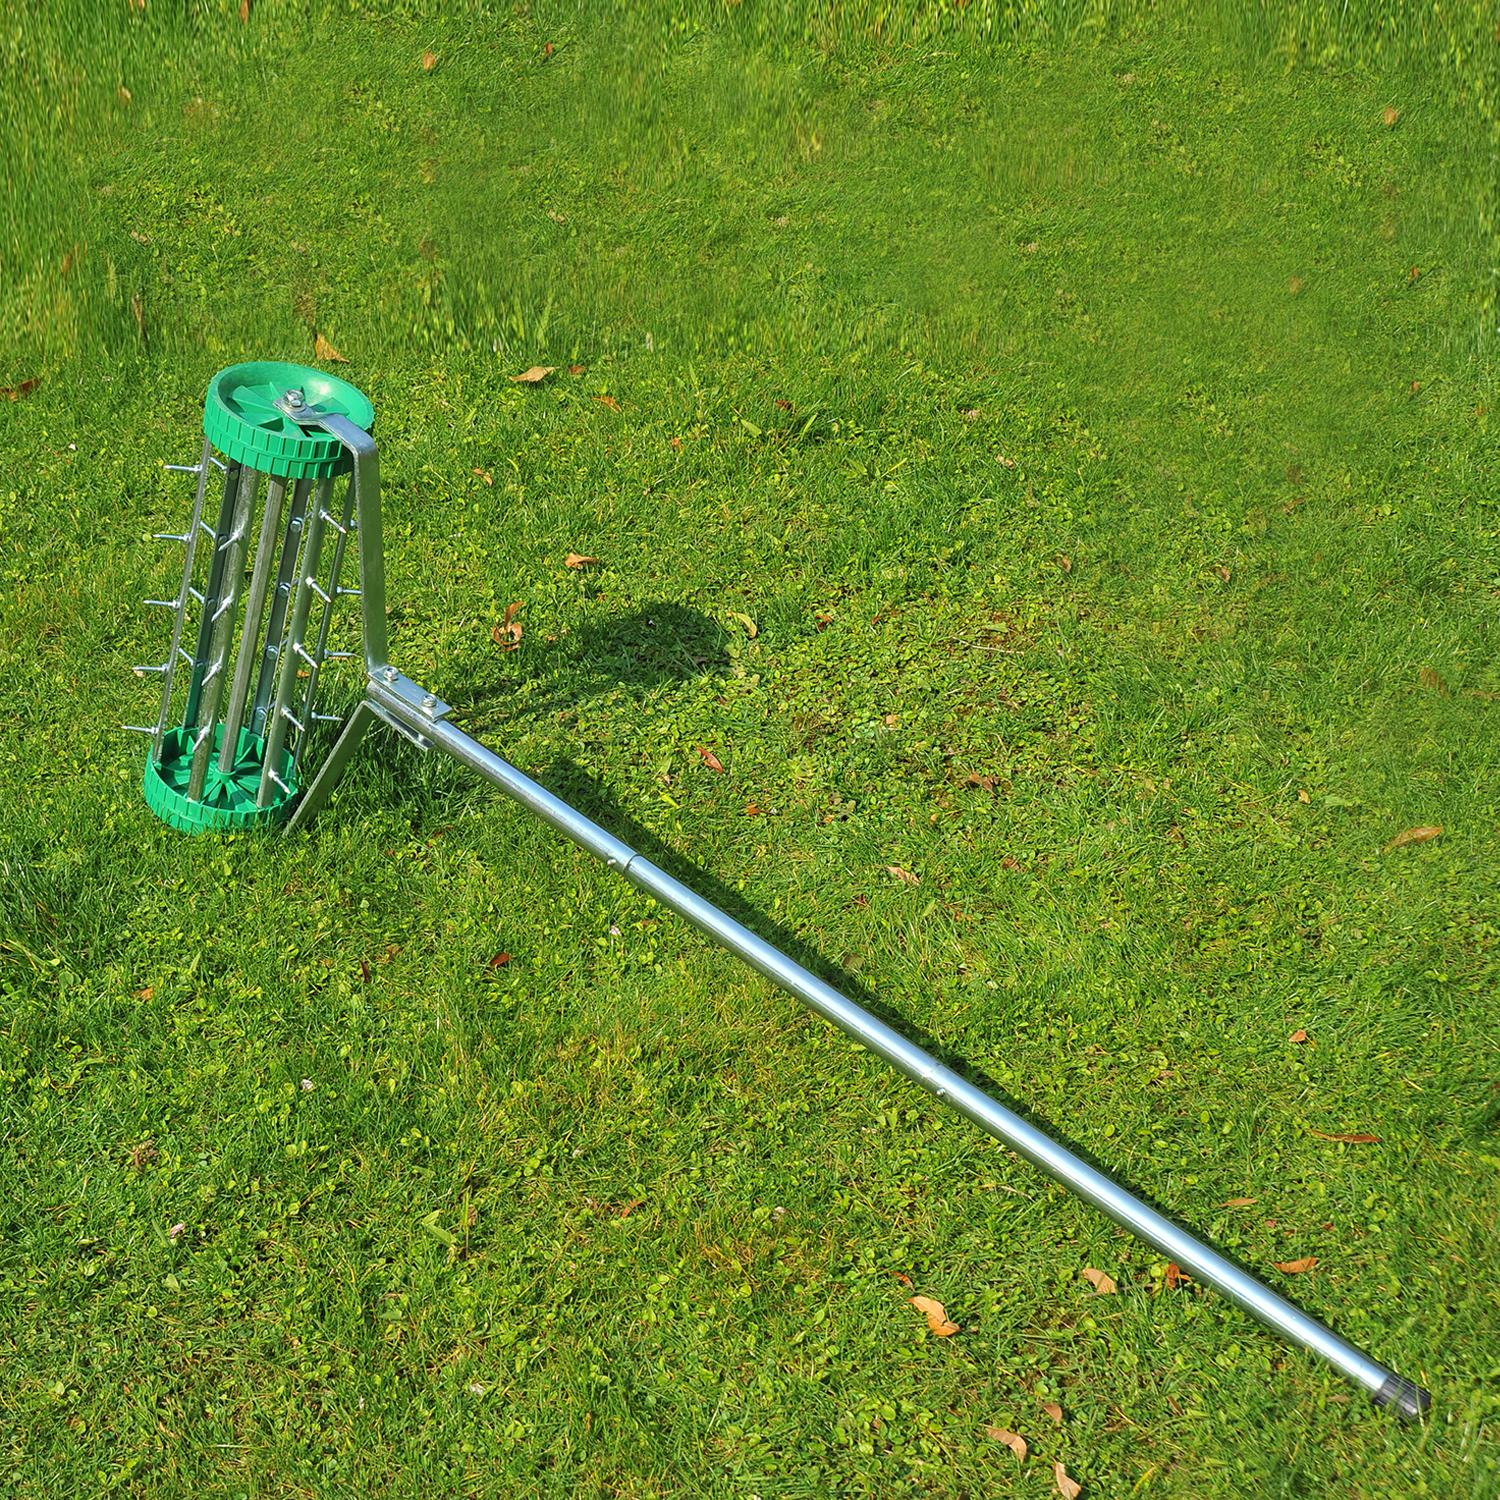 Rouleau aérateur pour pelouse avec manche télescopique 98L x 45l x 87H cm vert